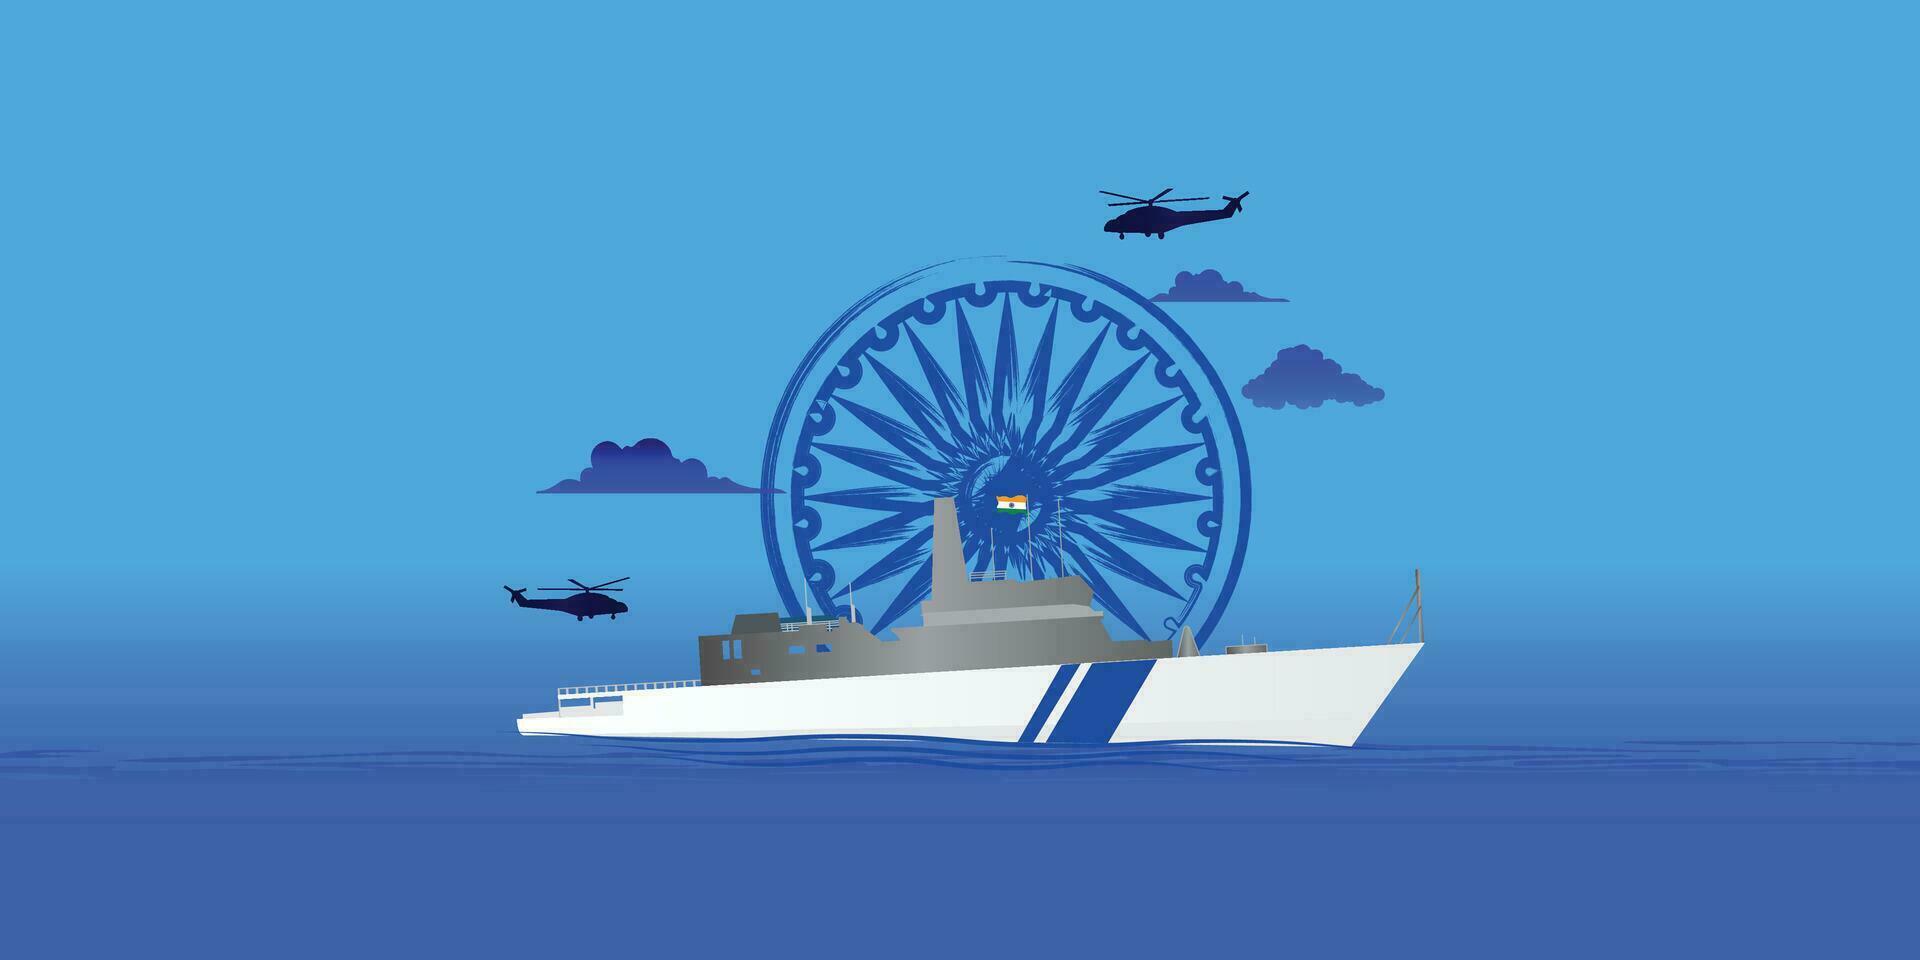 indisch Küste bewachen Tag ist beobachtete auf 1 Februar jeder Jahr zu Ehre das wichtig Rolle Das das Organisation Theaterstücke editierbar Vektor Illustration, indisch Küste bewachen patrouillieren Überwachung Boote